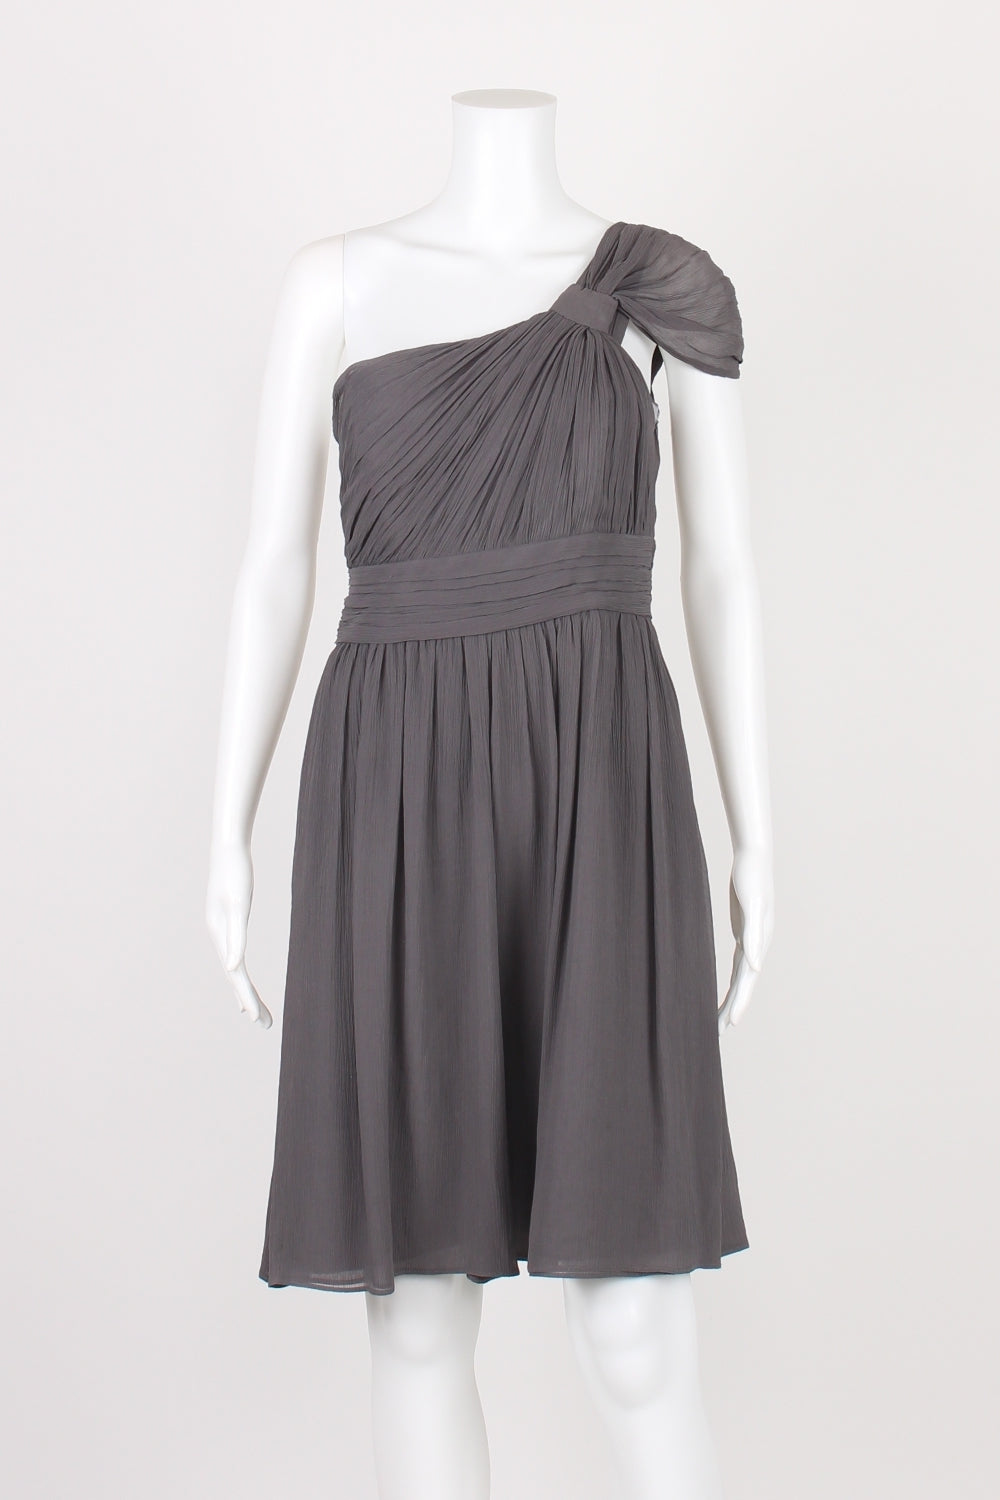 SABA Charcoal One Shoulder Silk Dress 8